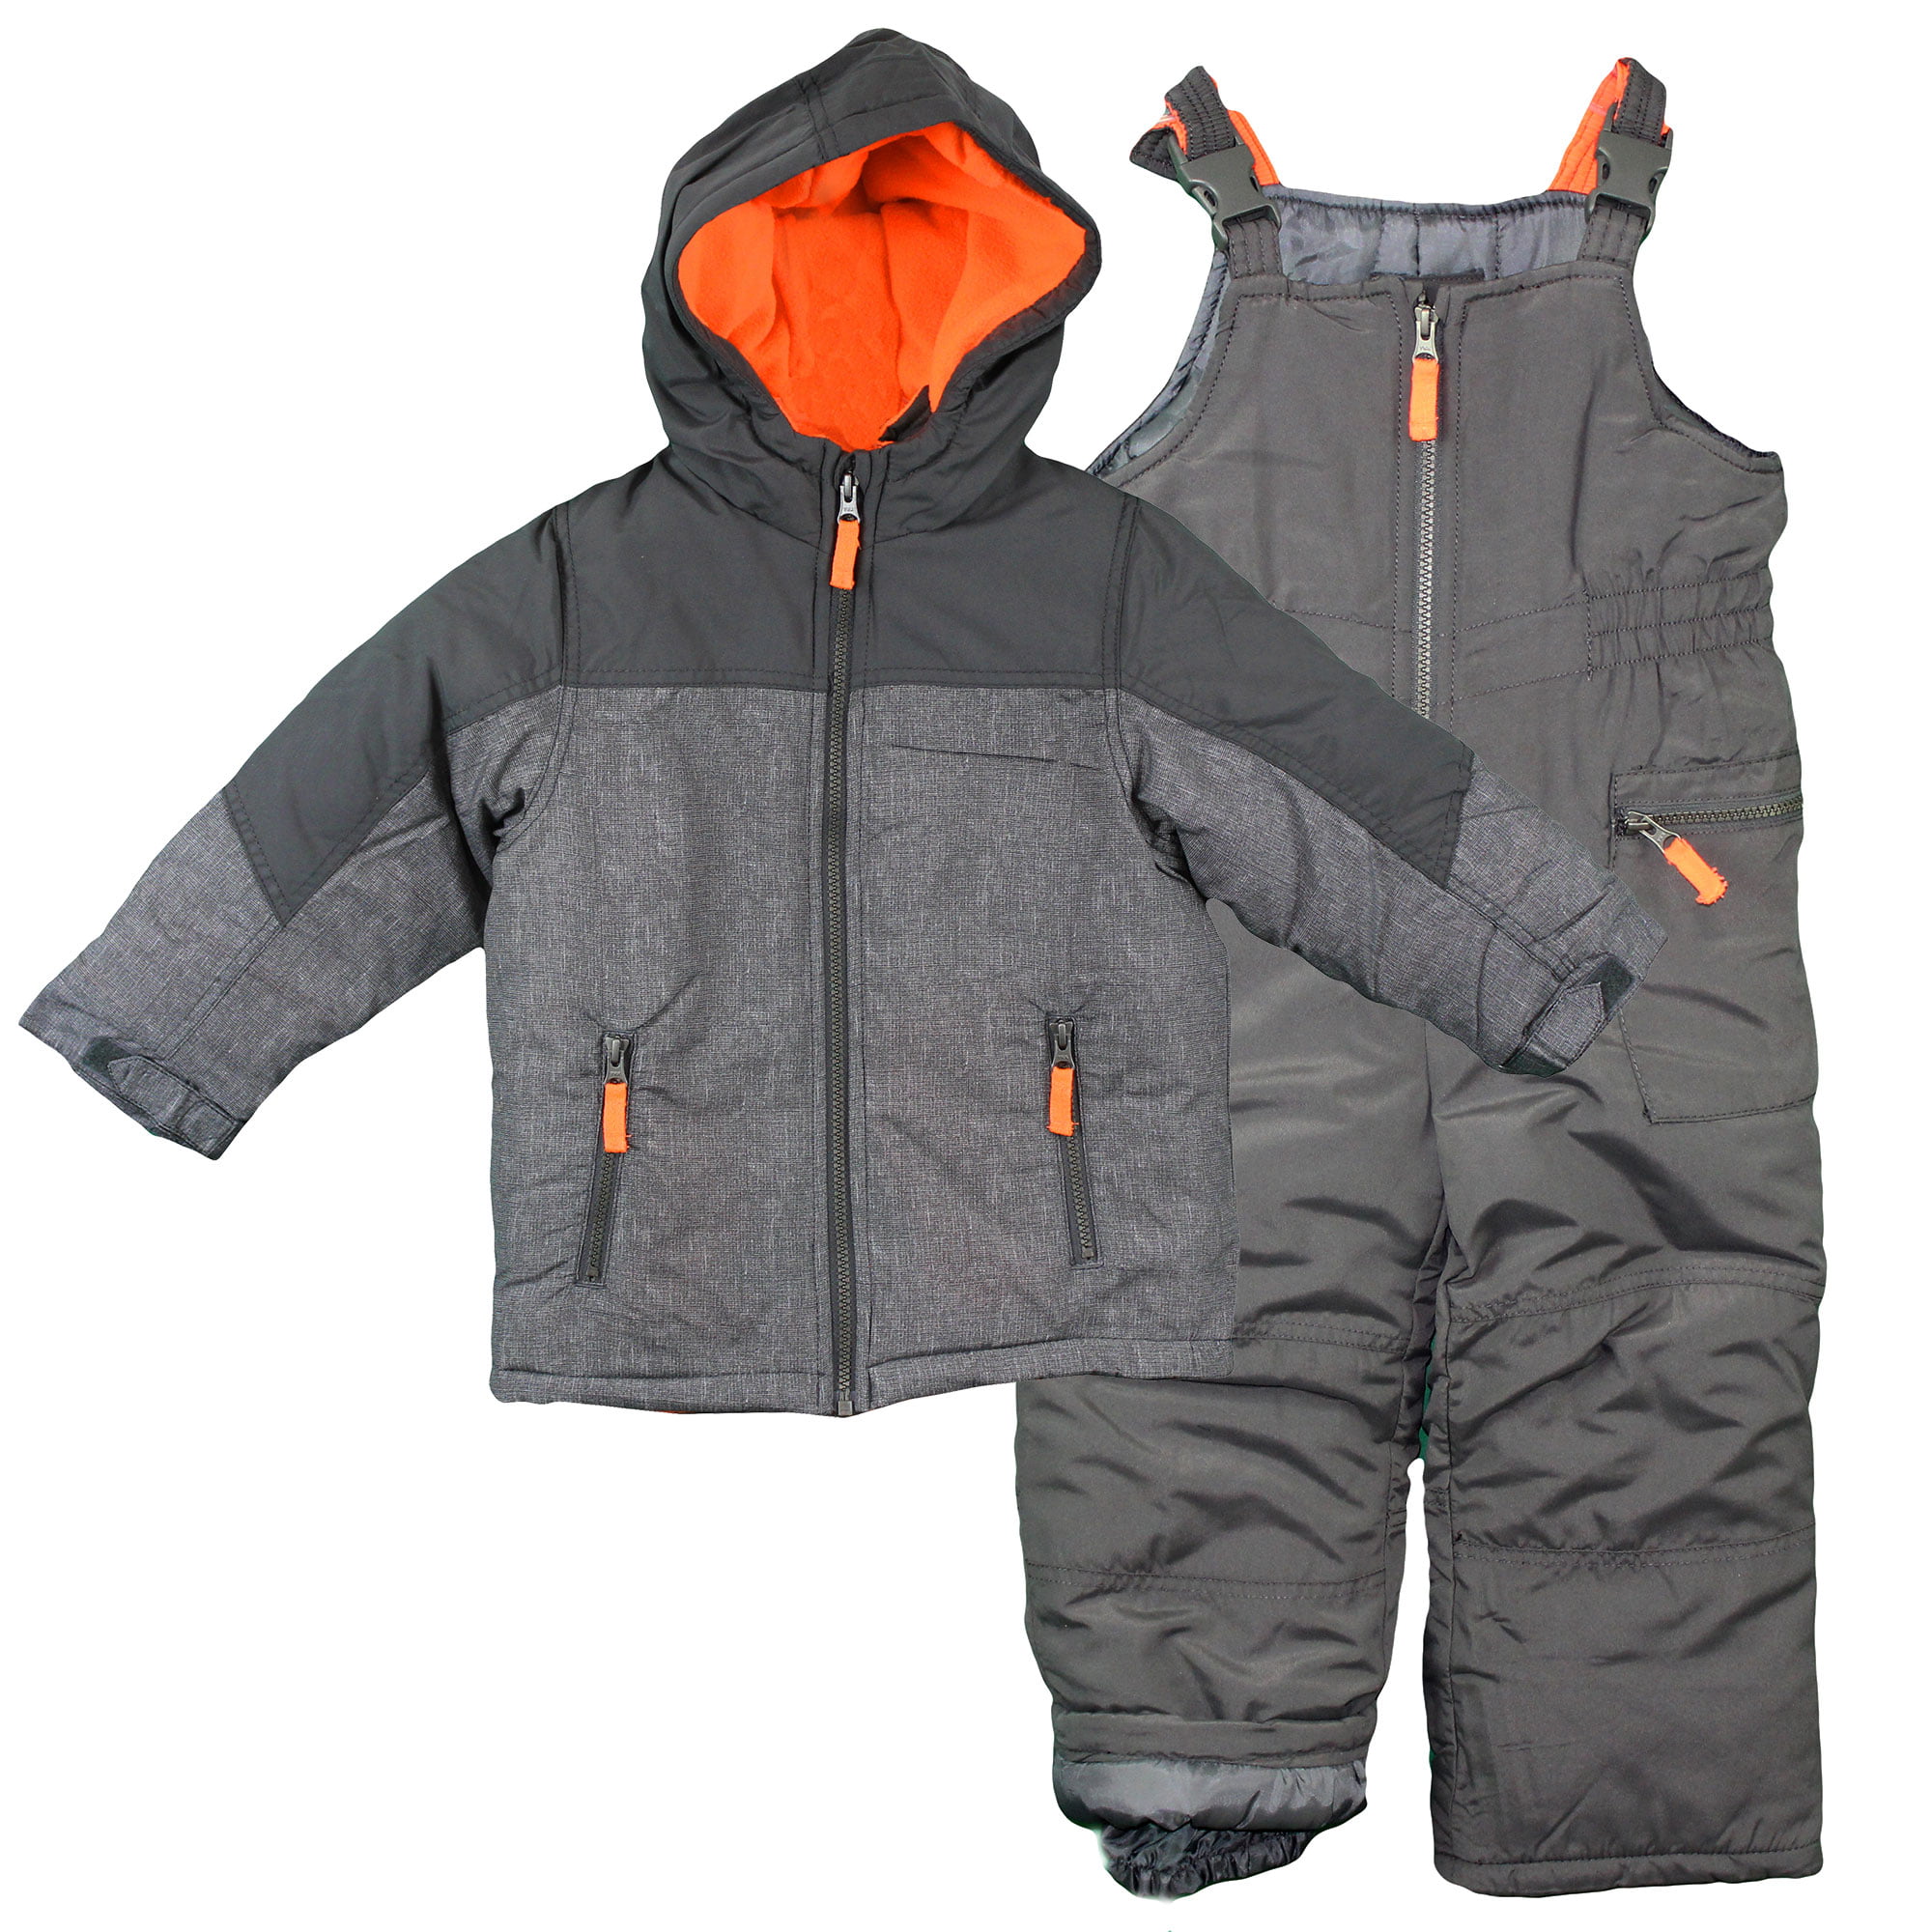 Details about   2pcs Colorblock Snow Bib Jacket Snowsuit Men Women Essential Insulated Skisuits 